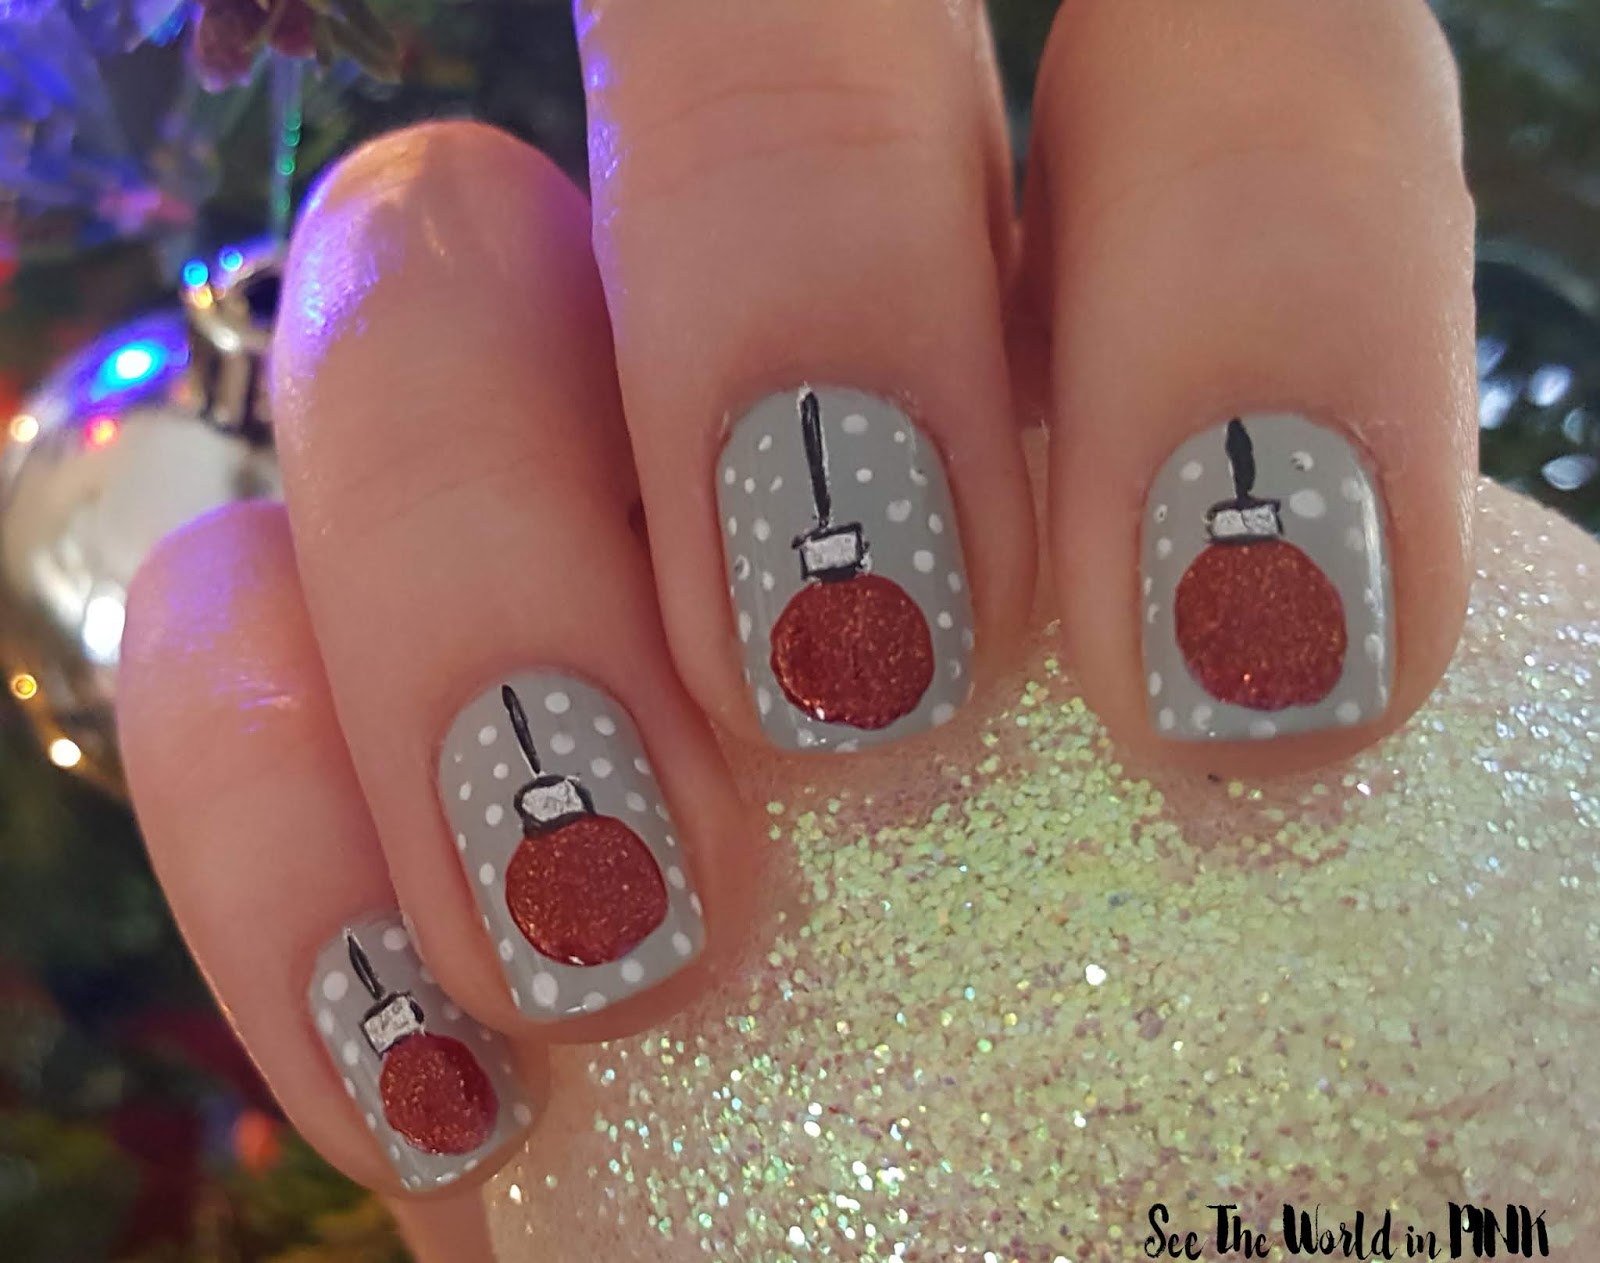 Manicure Monday - Christmas Ornament Nail Art! 